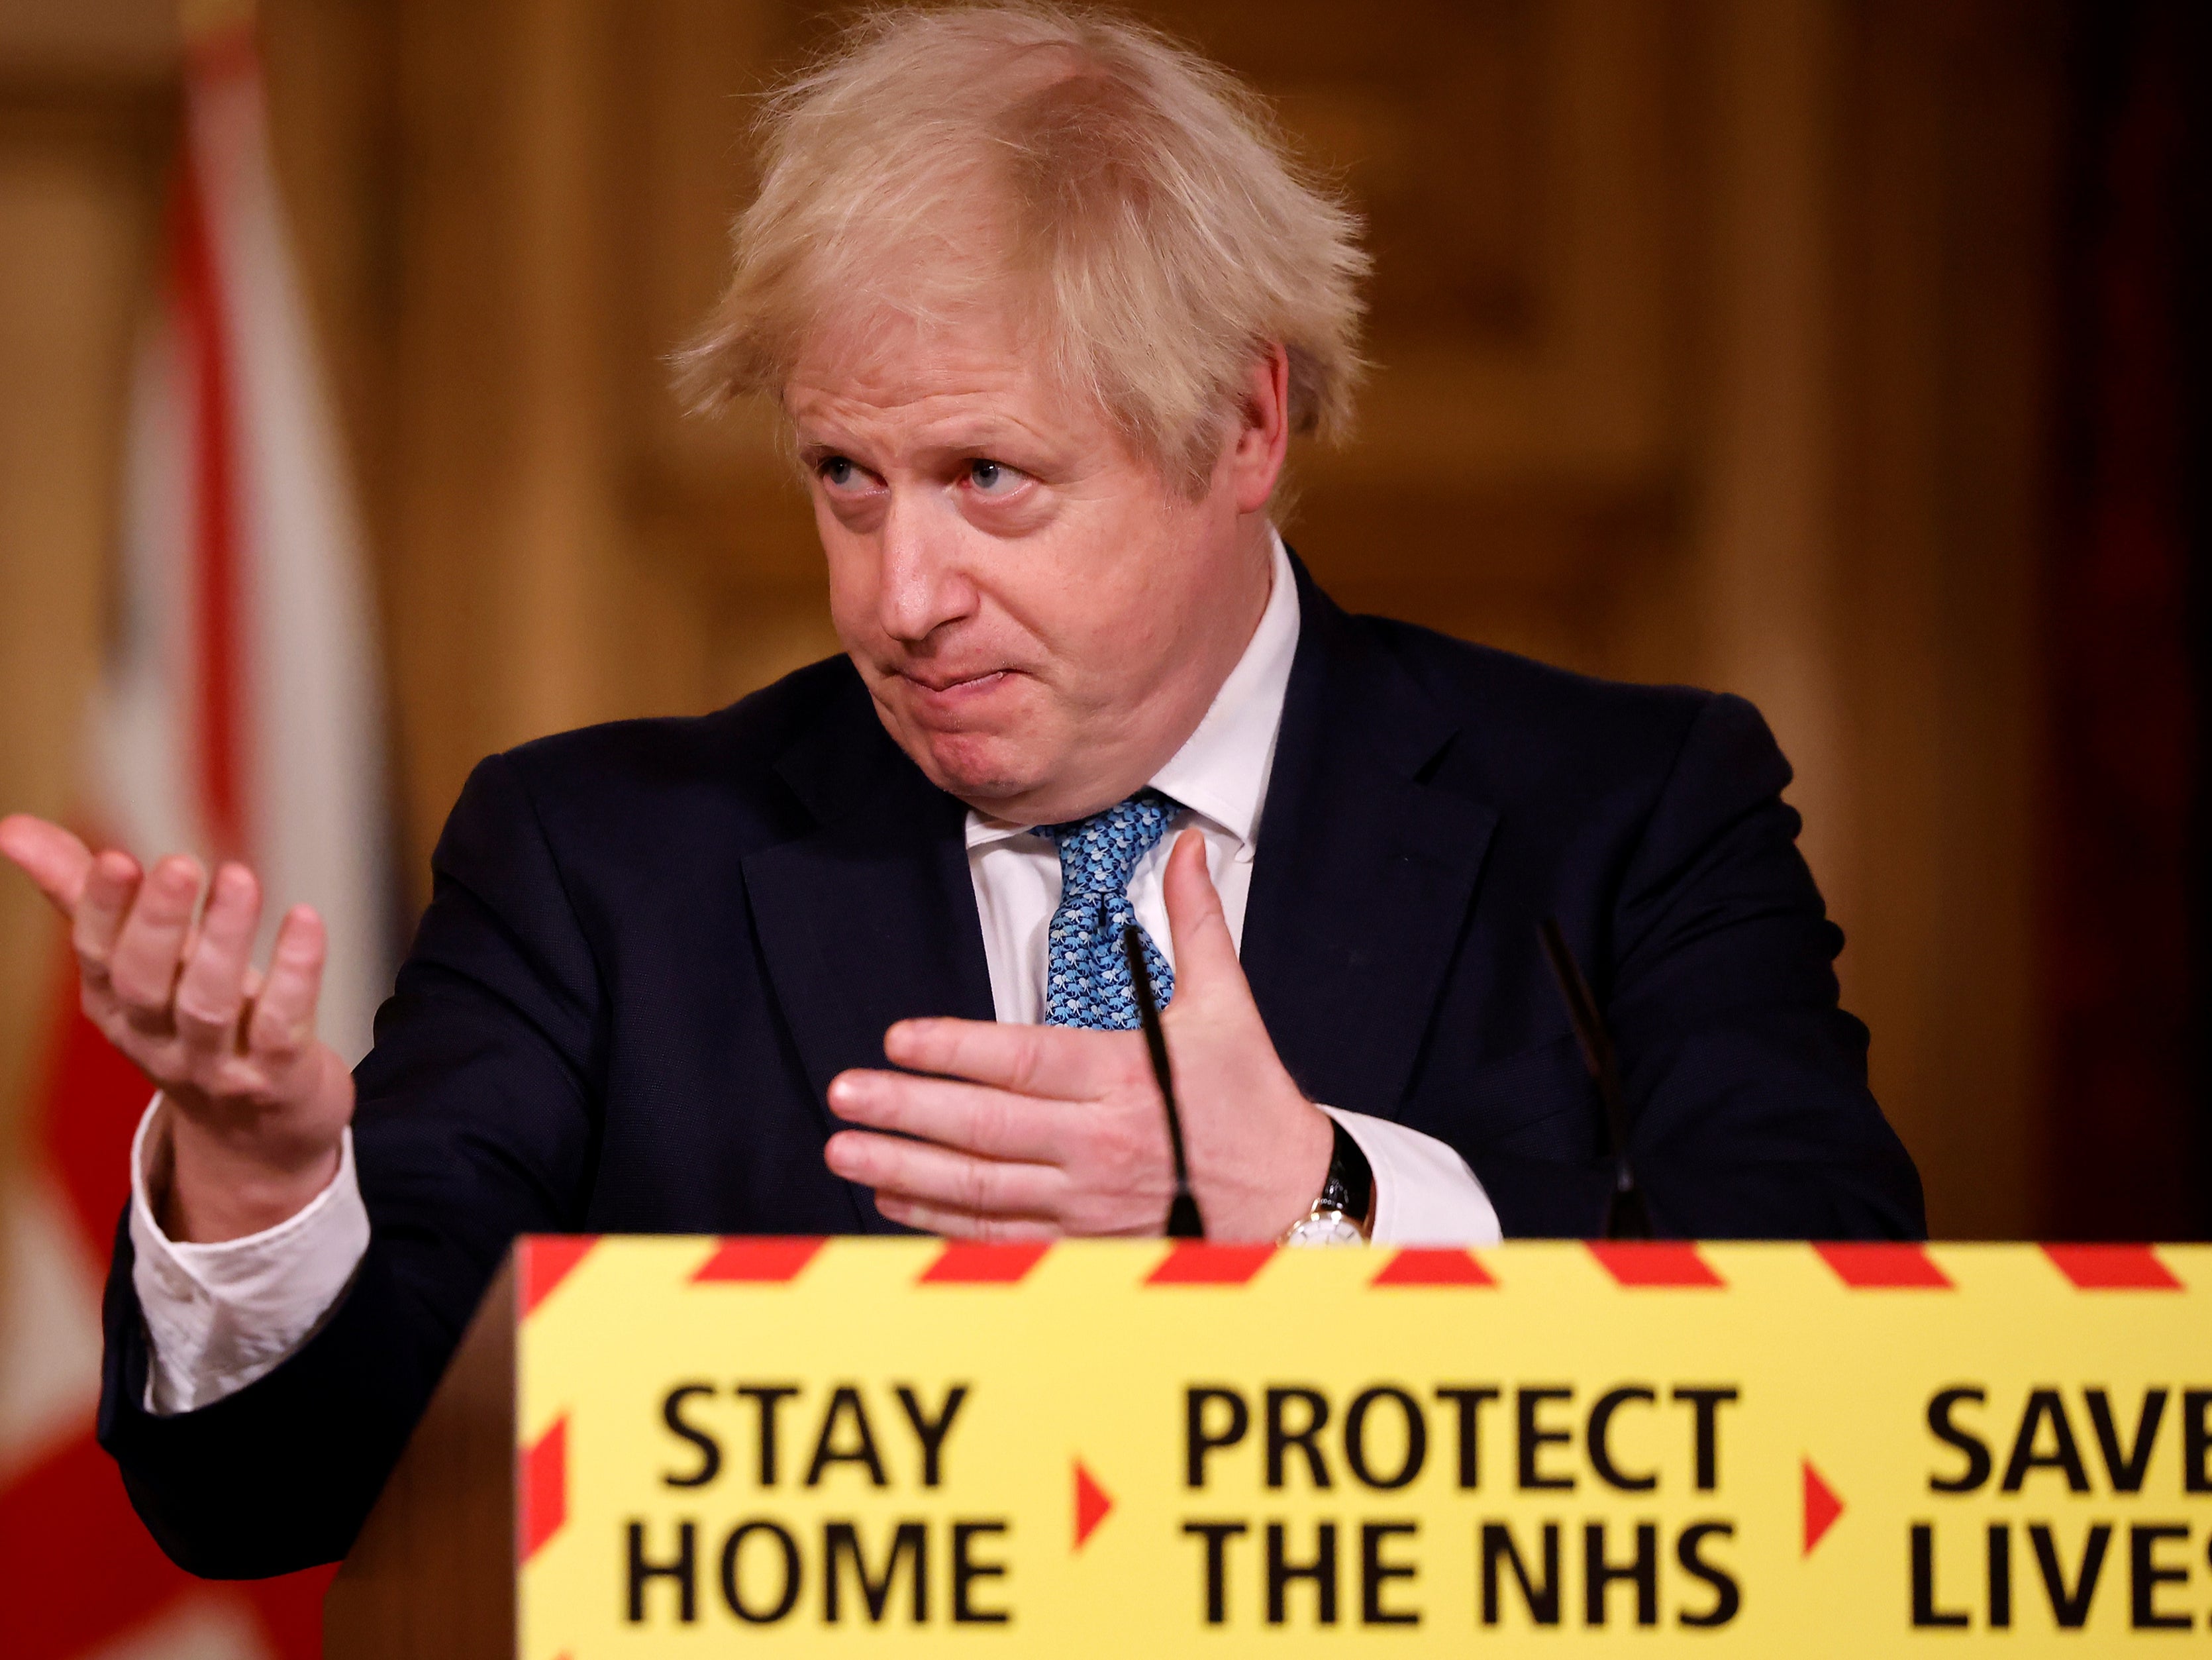 Boris Johnson at No 10 press conference